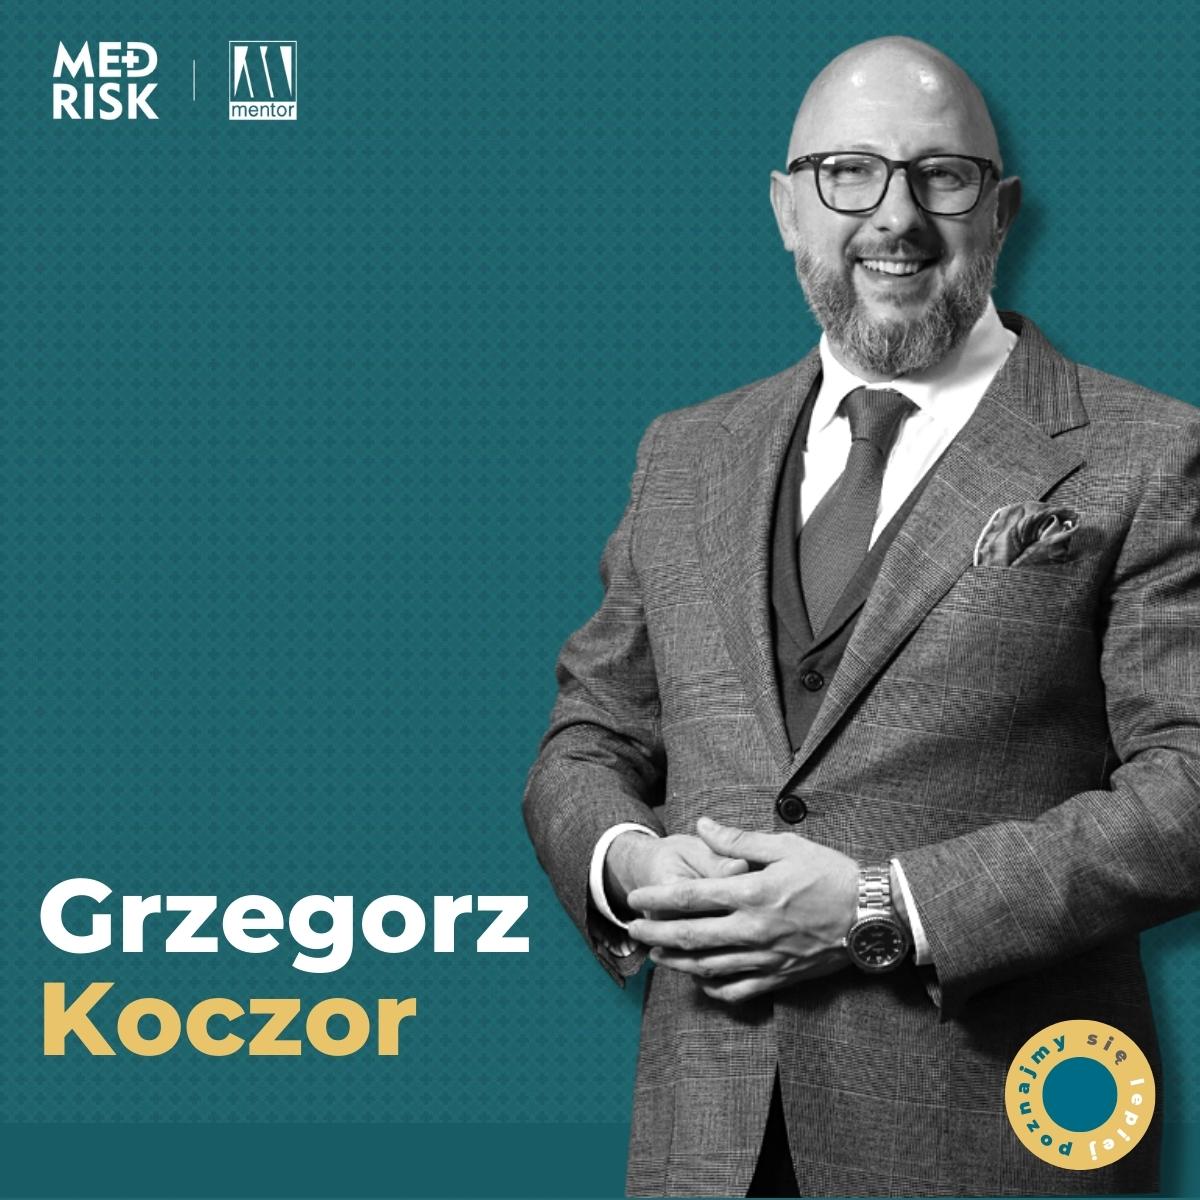 Poznajmy się Grzegorz Koczor – „Lean management”